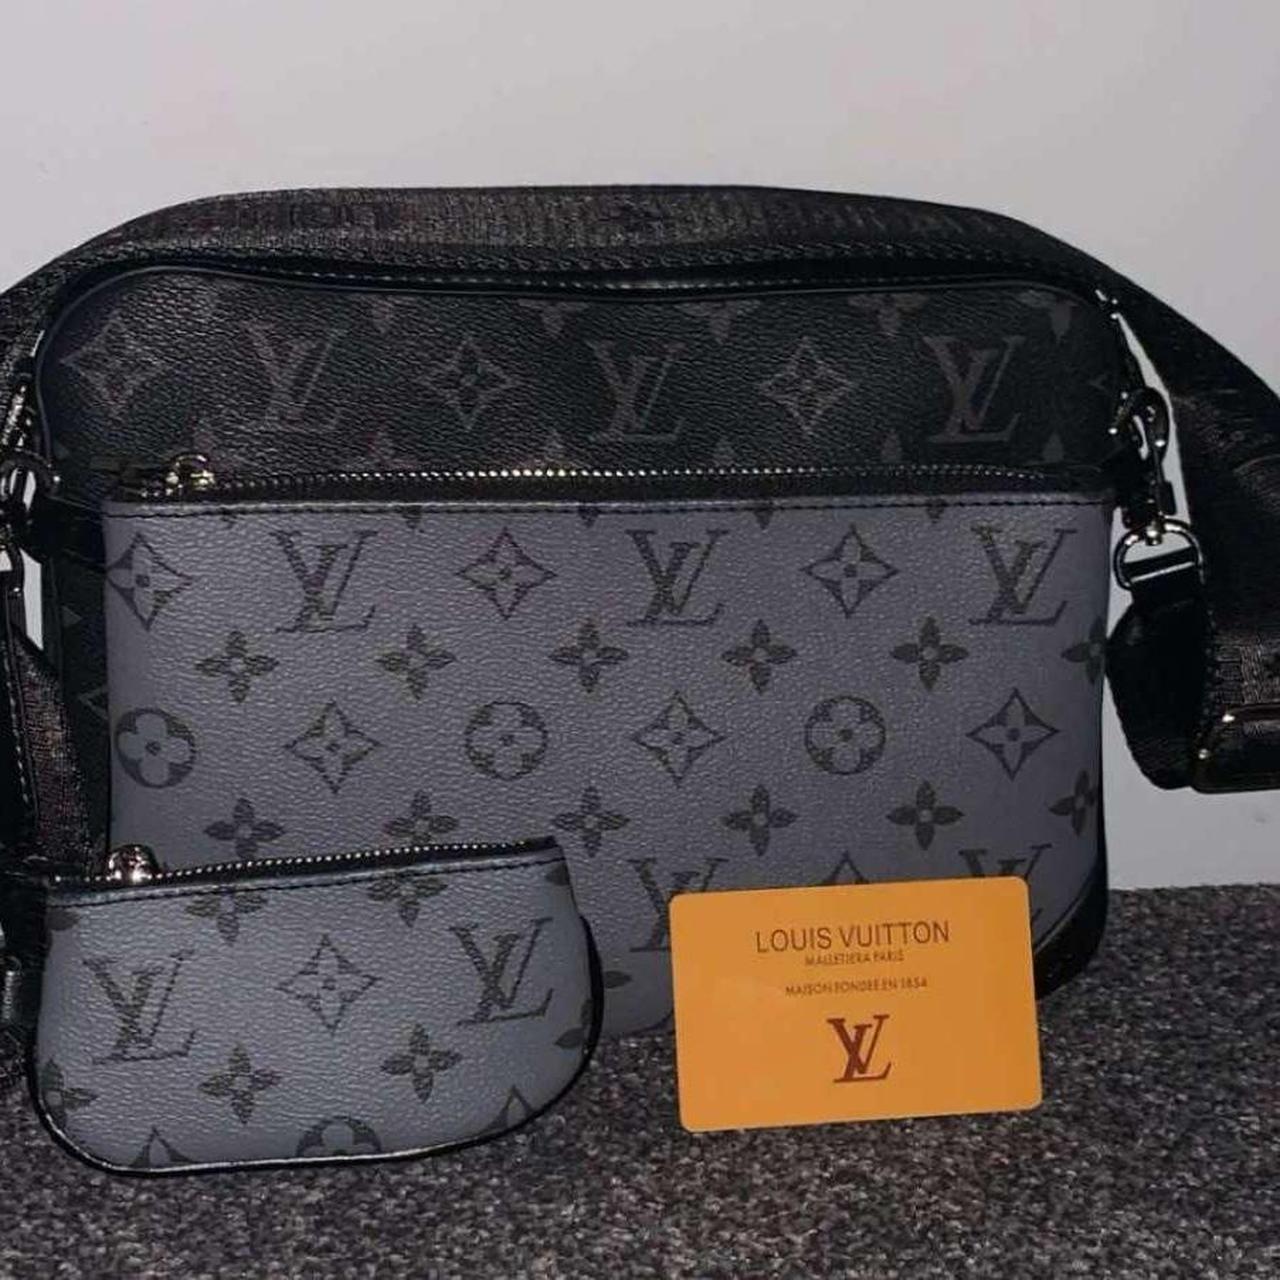 Louis Vuitton Lv messenger pouch Brand new... - Depop